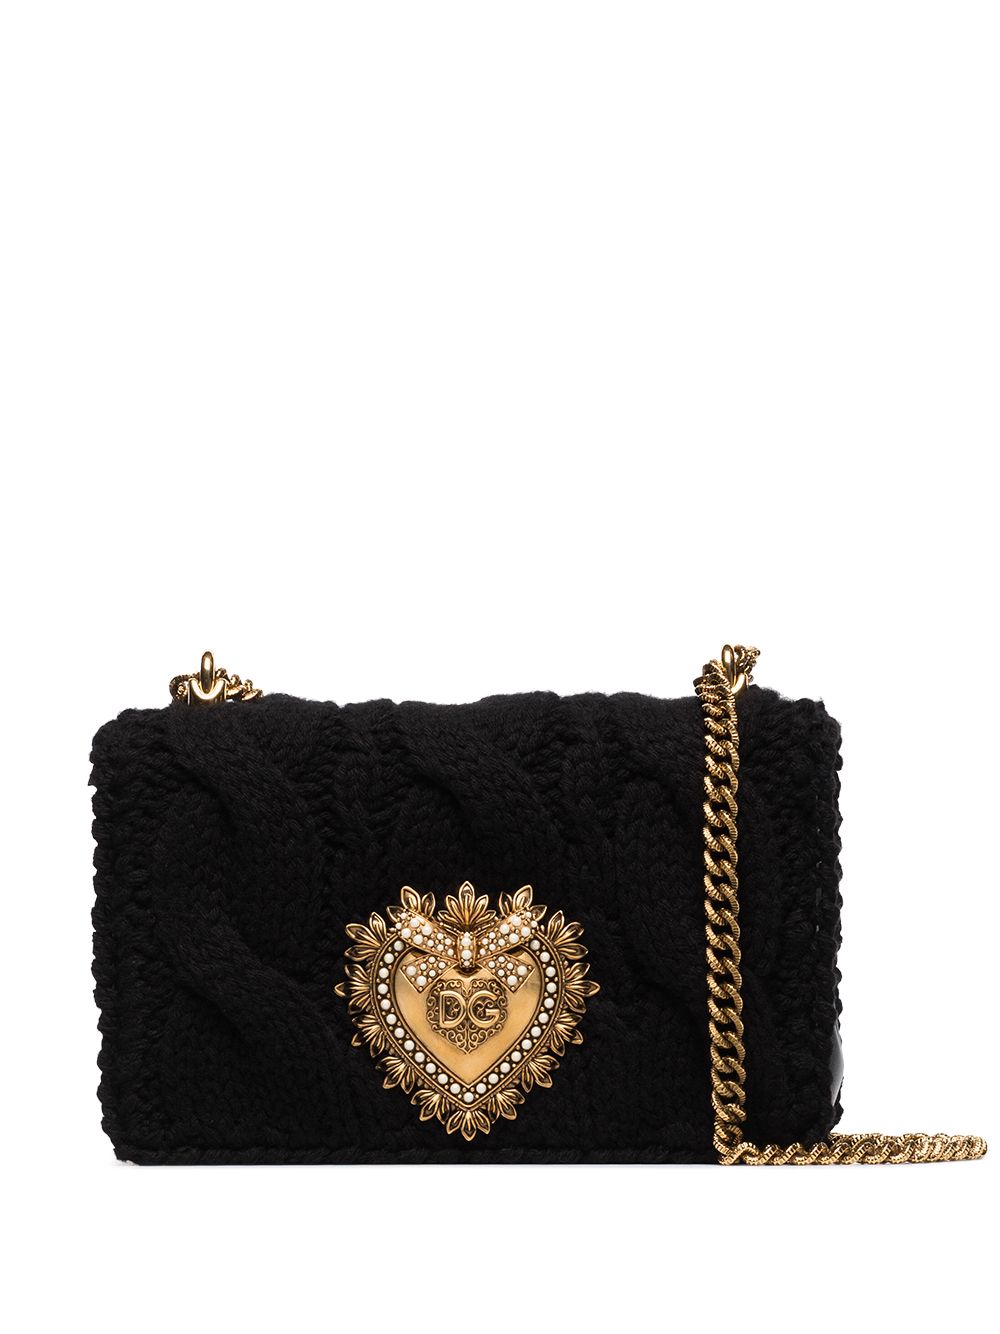 Dolce & Gabbana
knit-effect Devotion shoulder bag